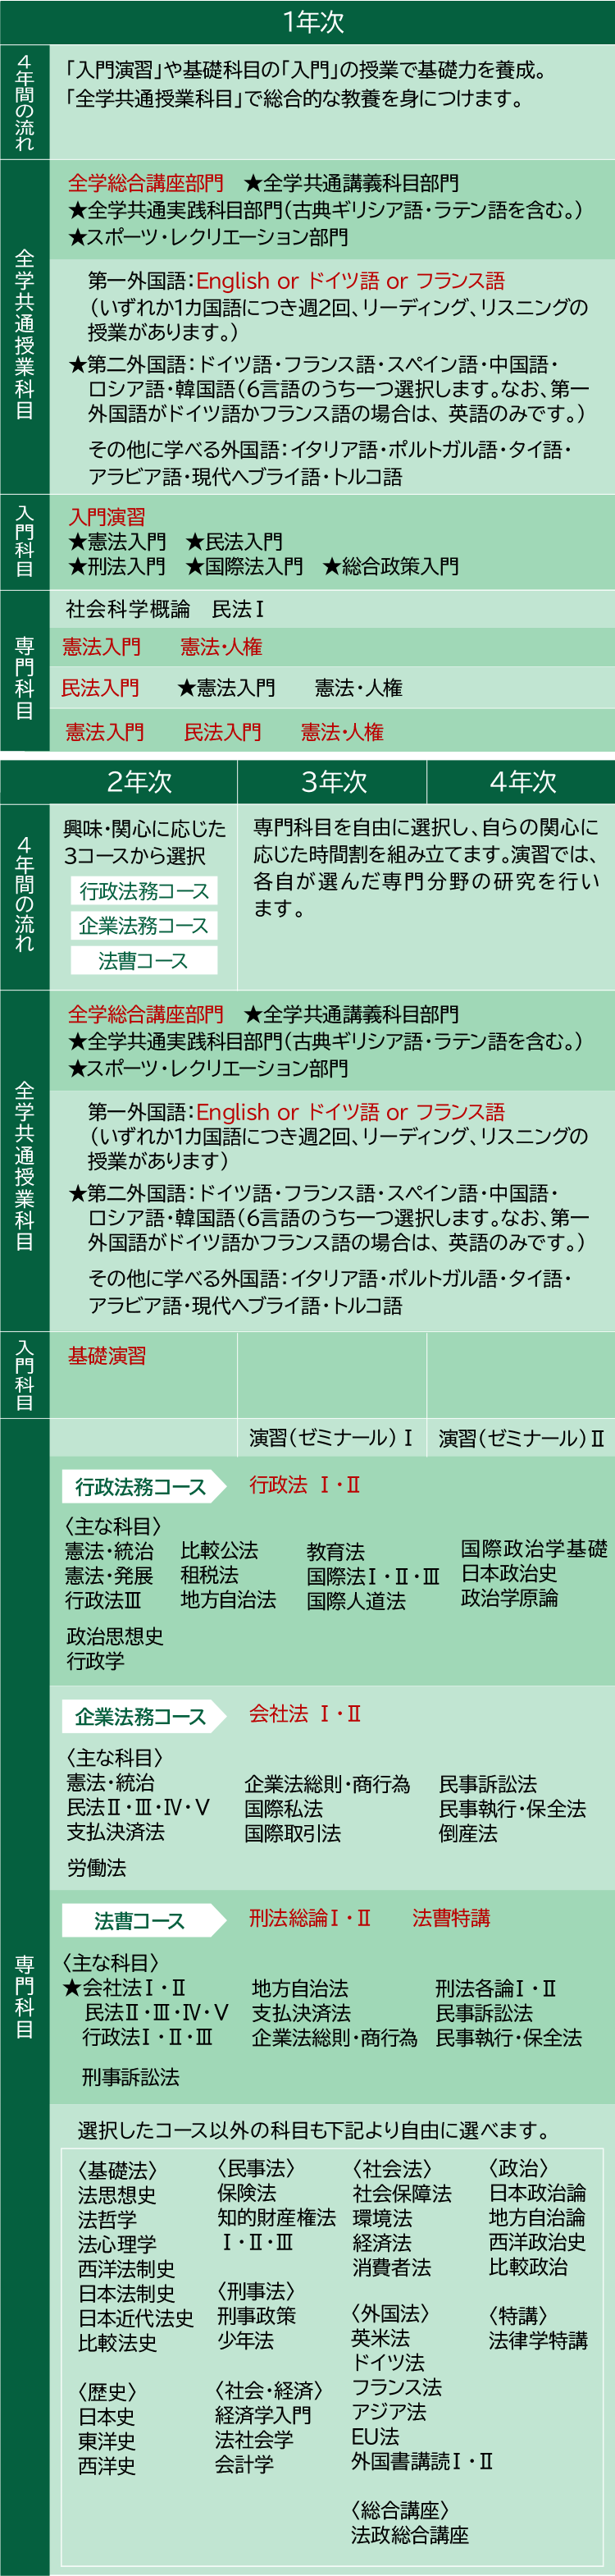 図:法律学科：学科紹介 / カリキュラム